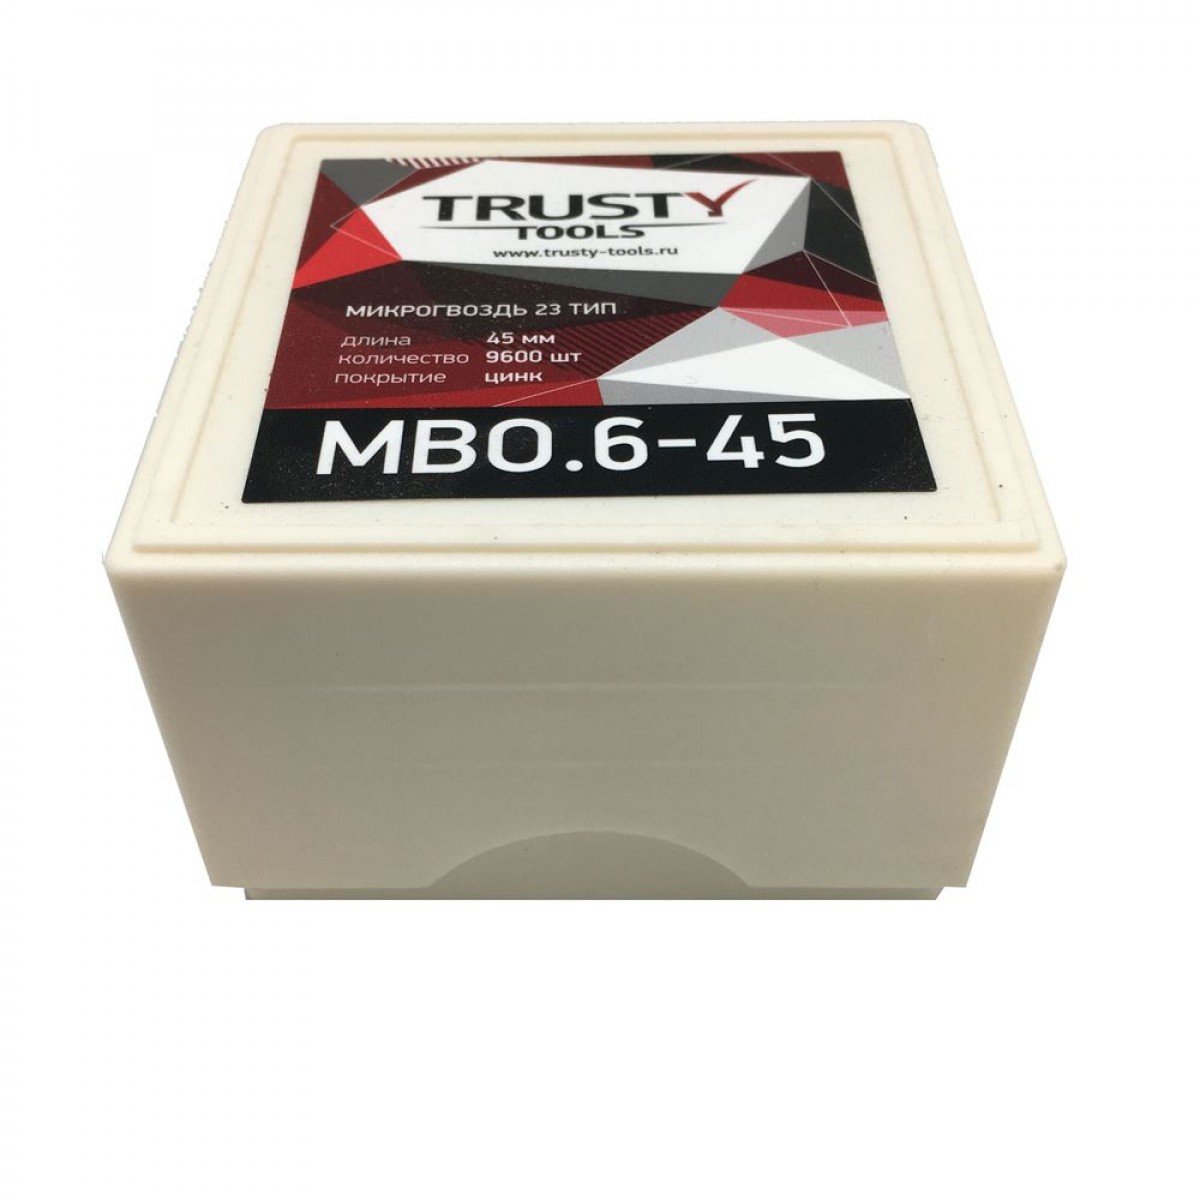 Микрогвоздь Trusty 45 мм MBO.6-45 тип 23, 23 ga, MB, 9600 шт